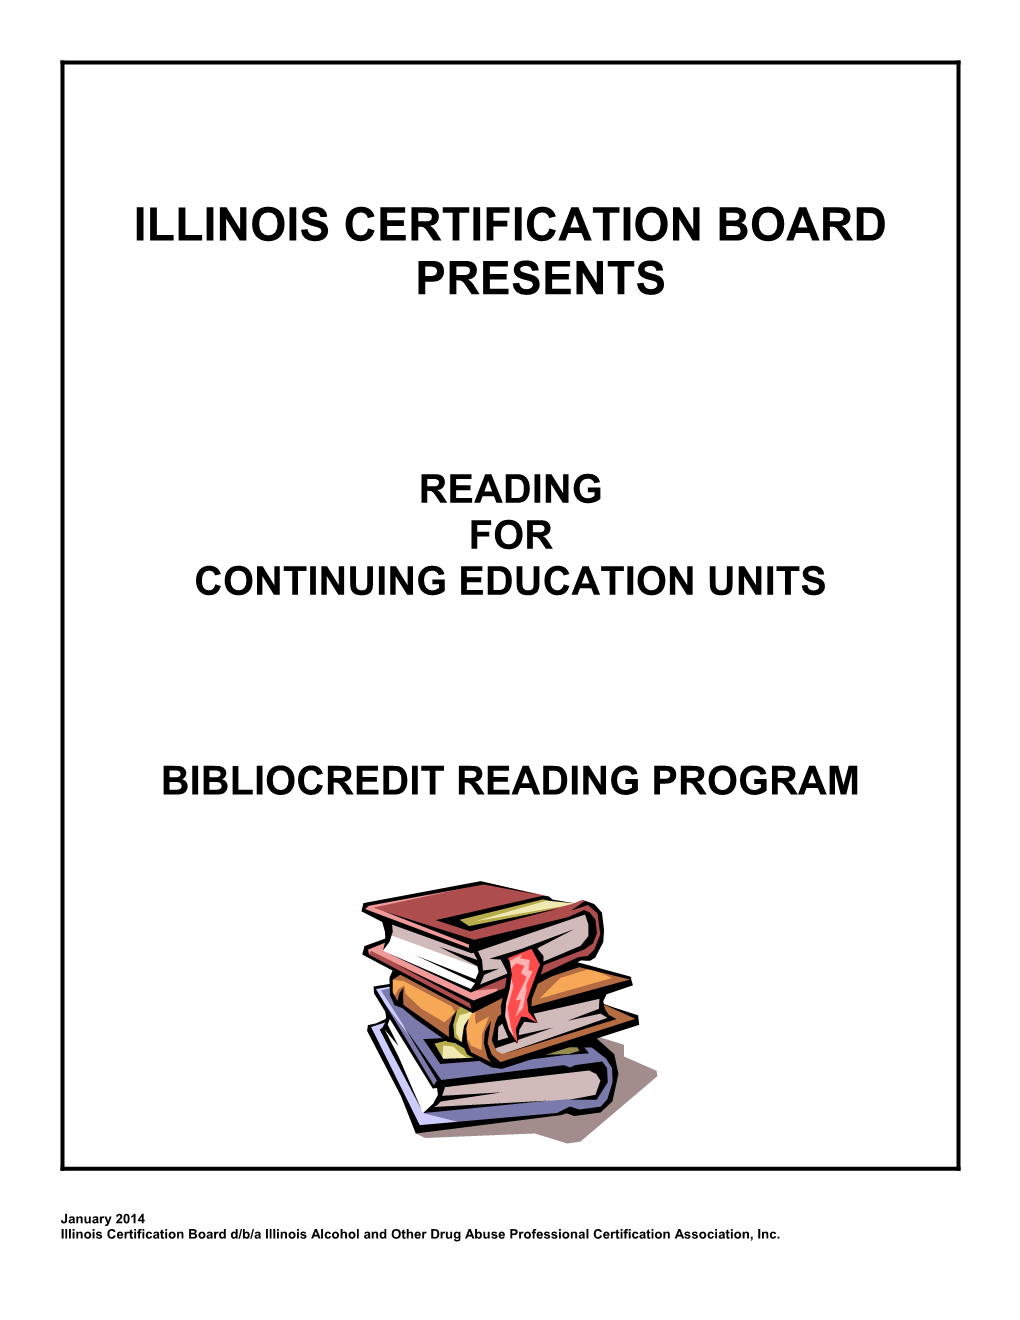 Illinois Certification Board Presents